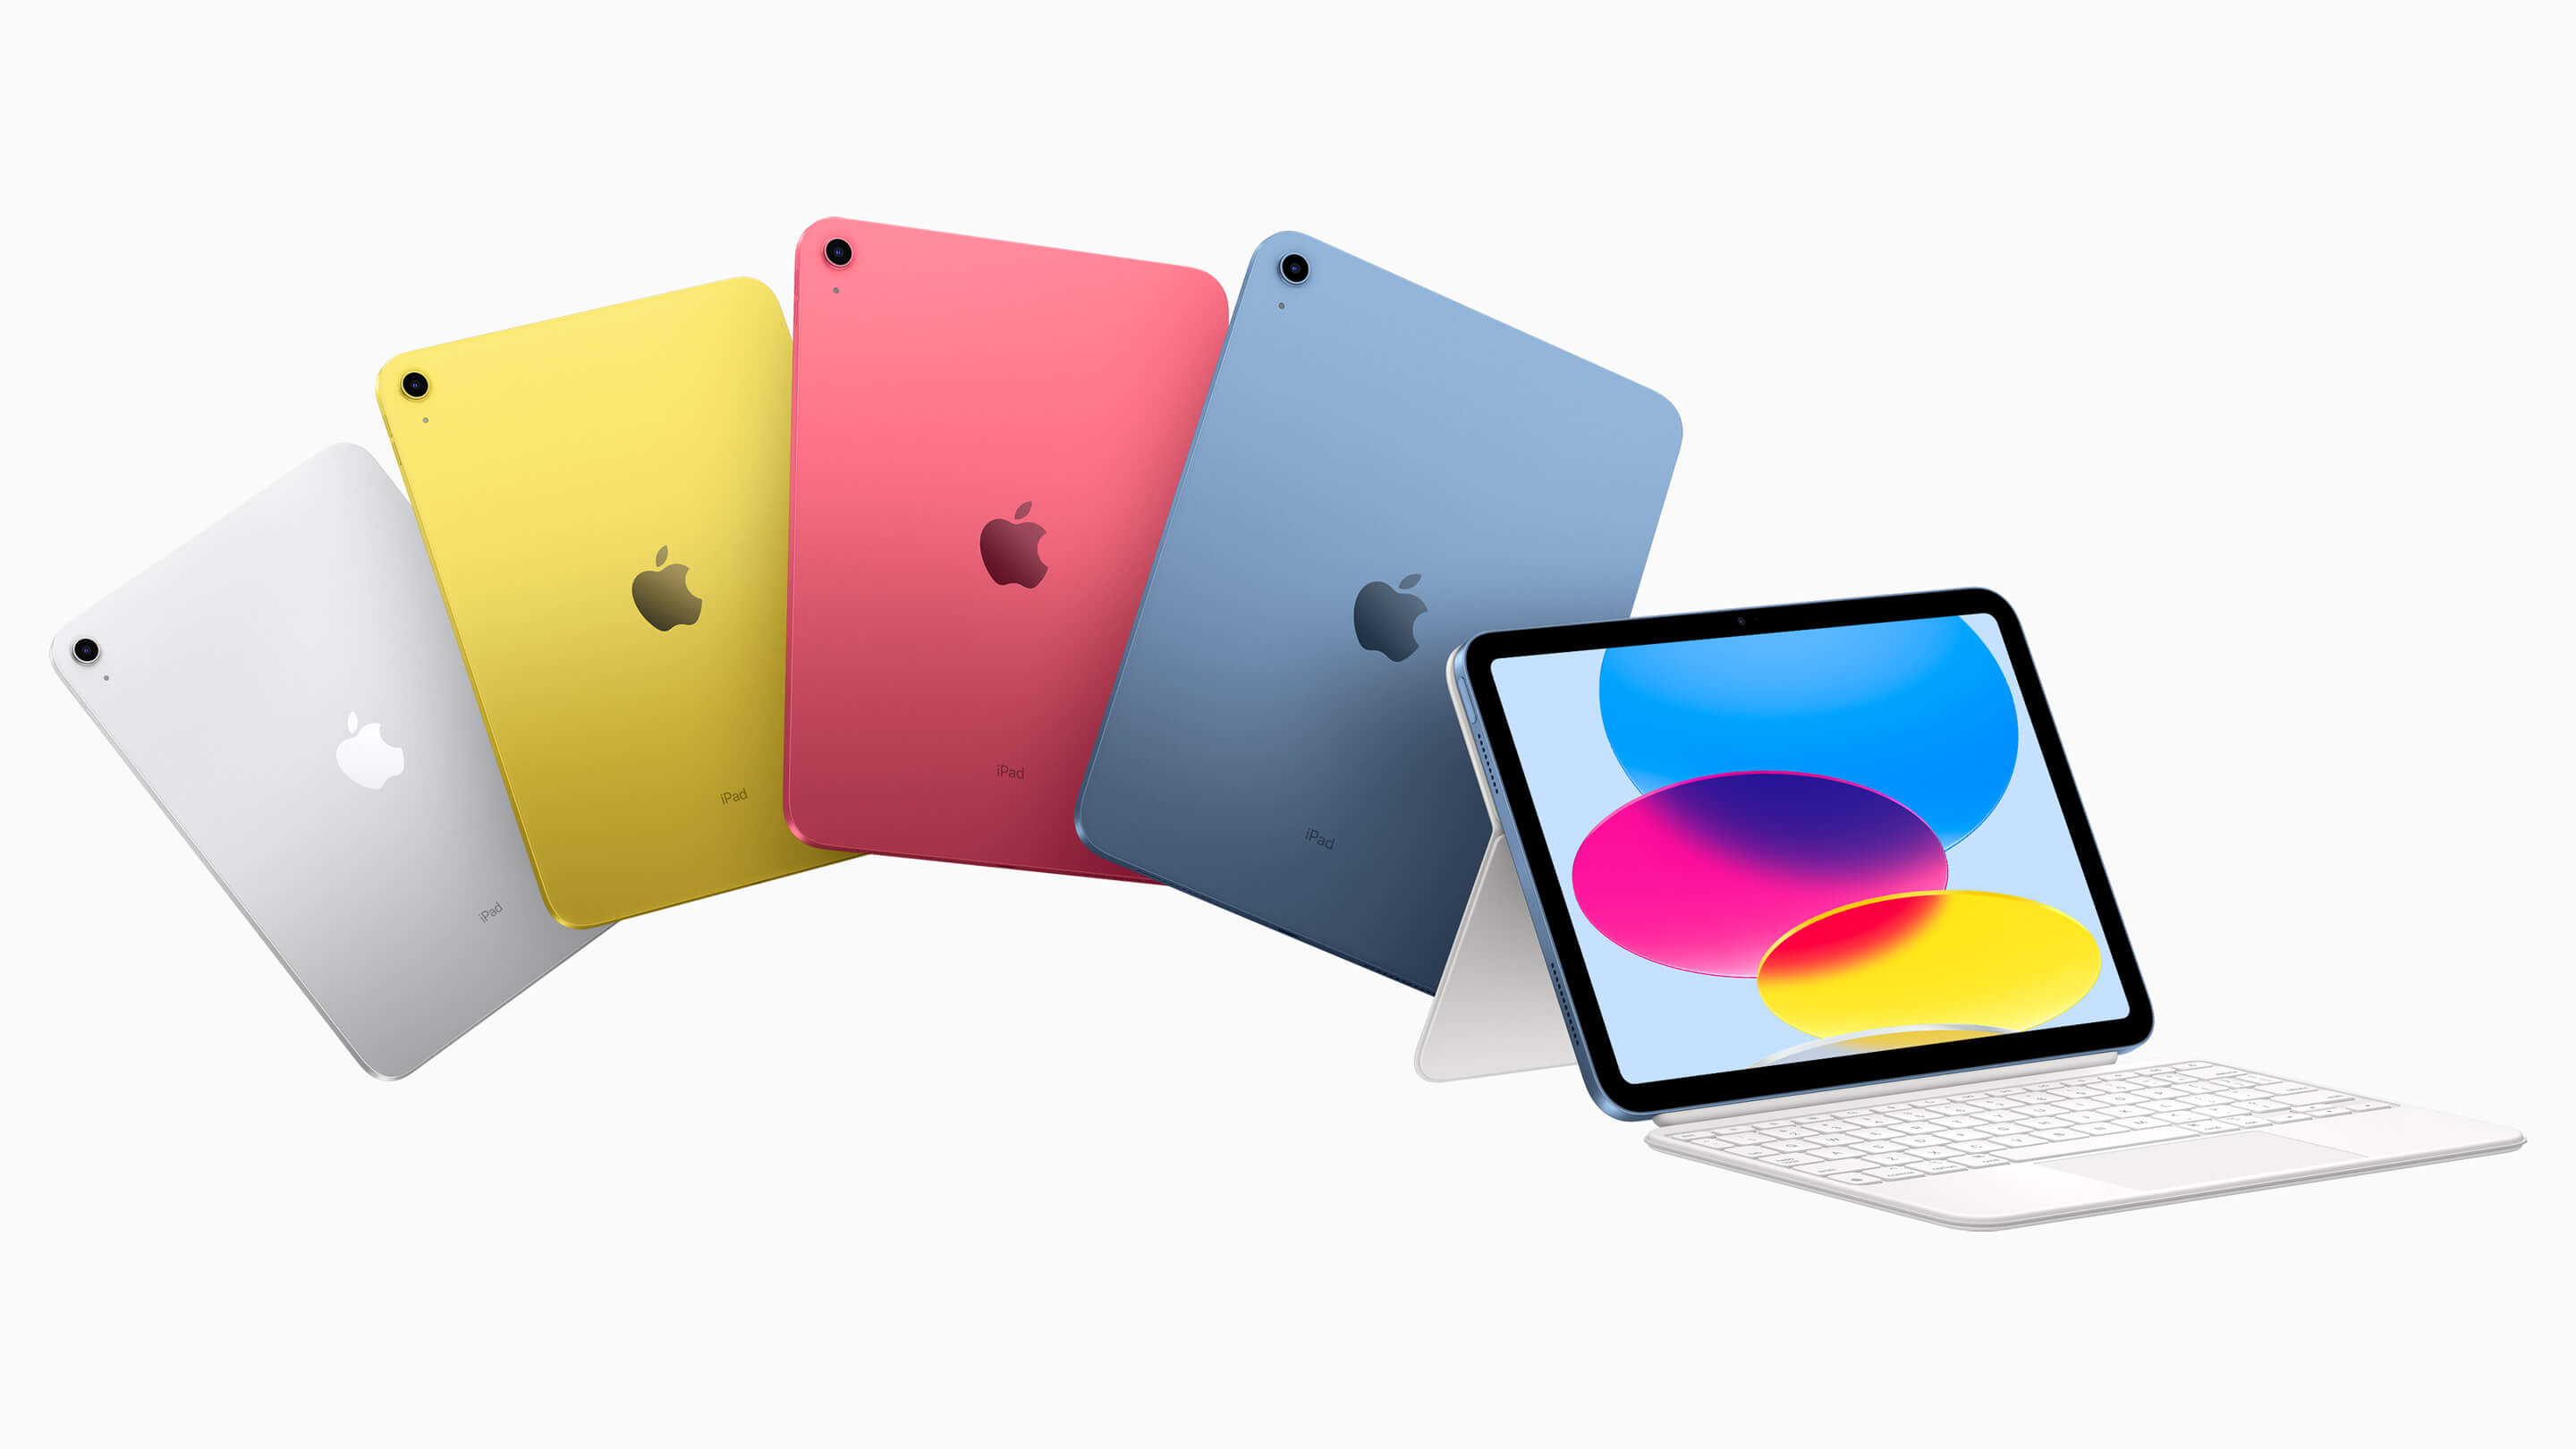 De nieuwe iPad komt in vier verschillende kleuren: welke kies jij?